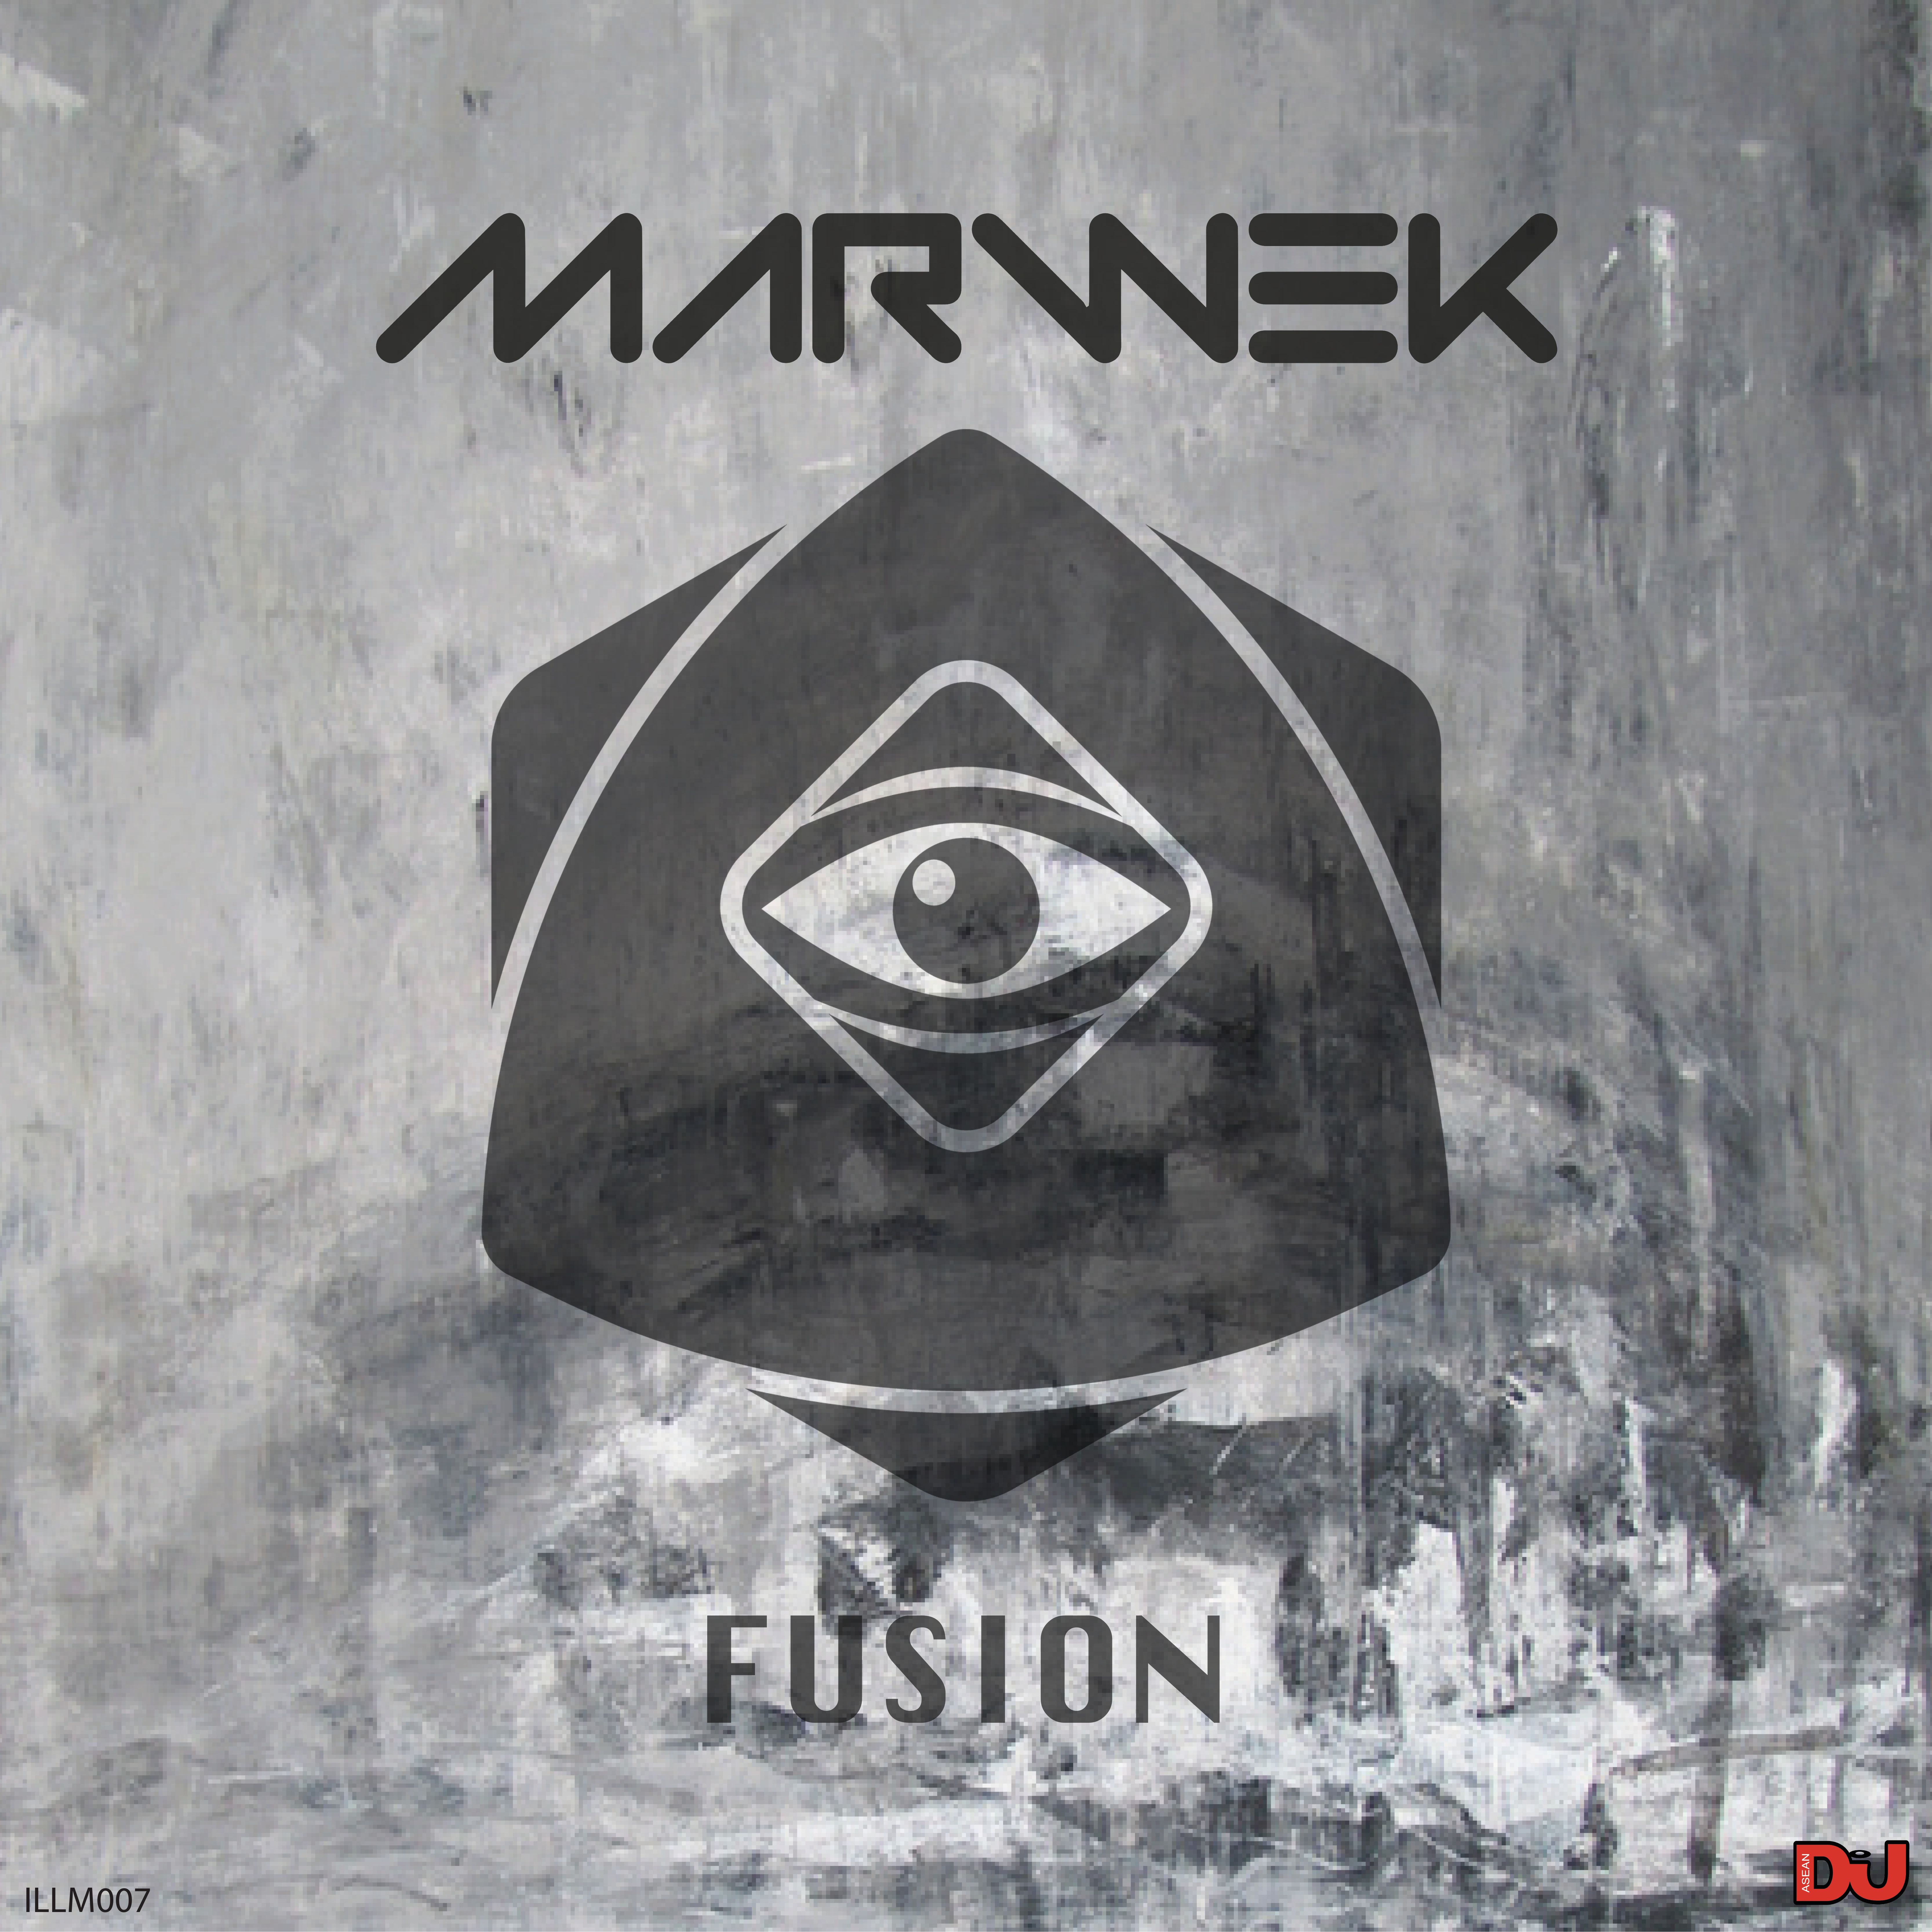 Hent Marwek - Fusion (Original Mix)